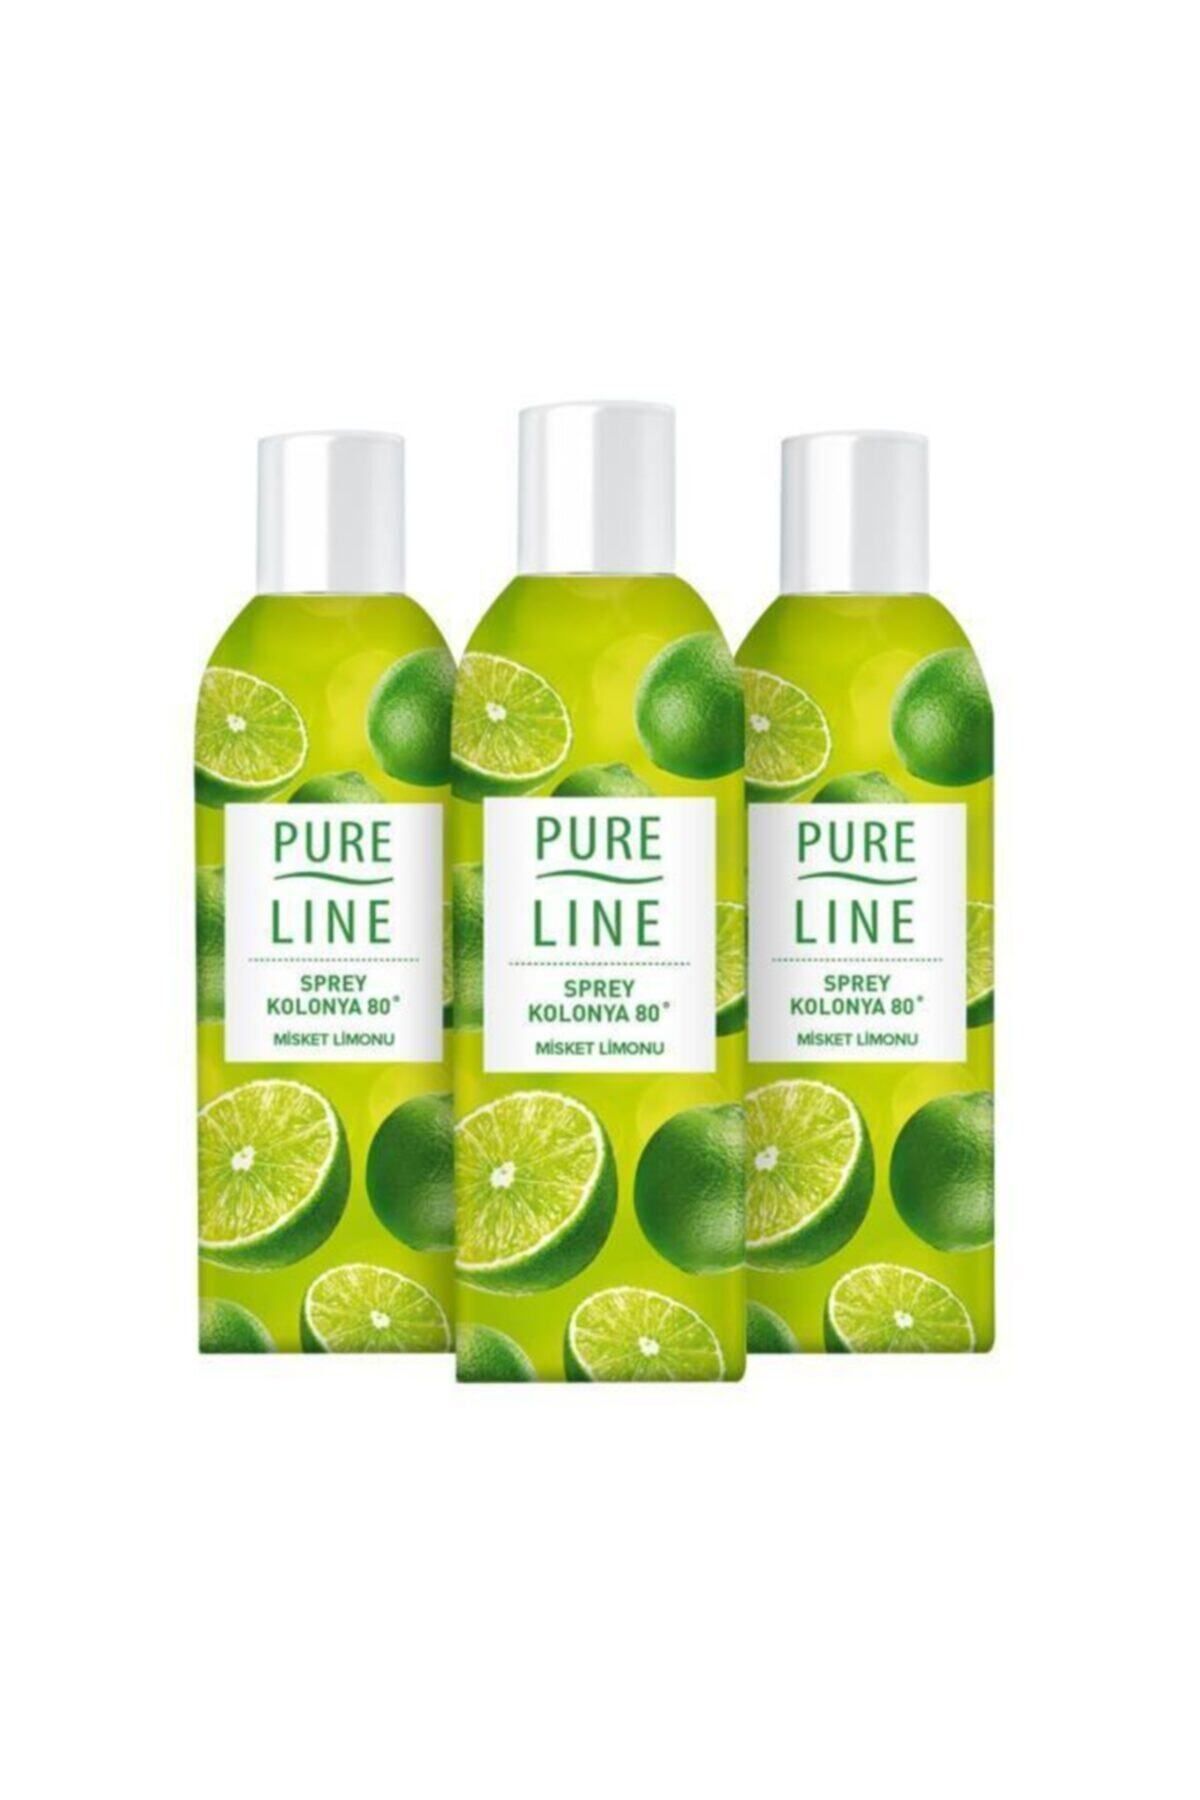 Pure Line Sprey Kolonya Misket Limonu 100 ml - 3'lü Avantaj Paketi